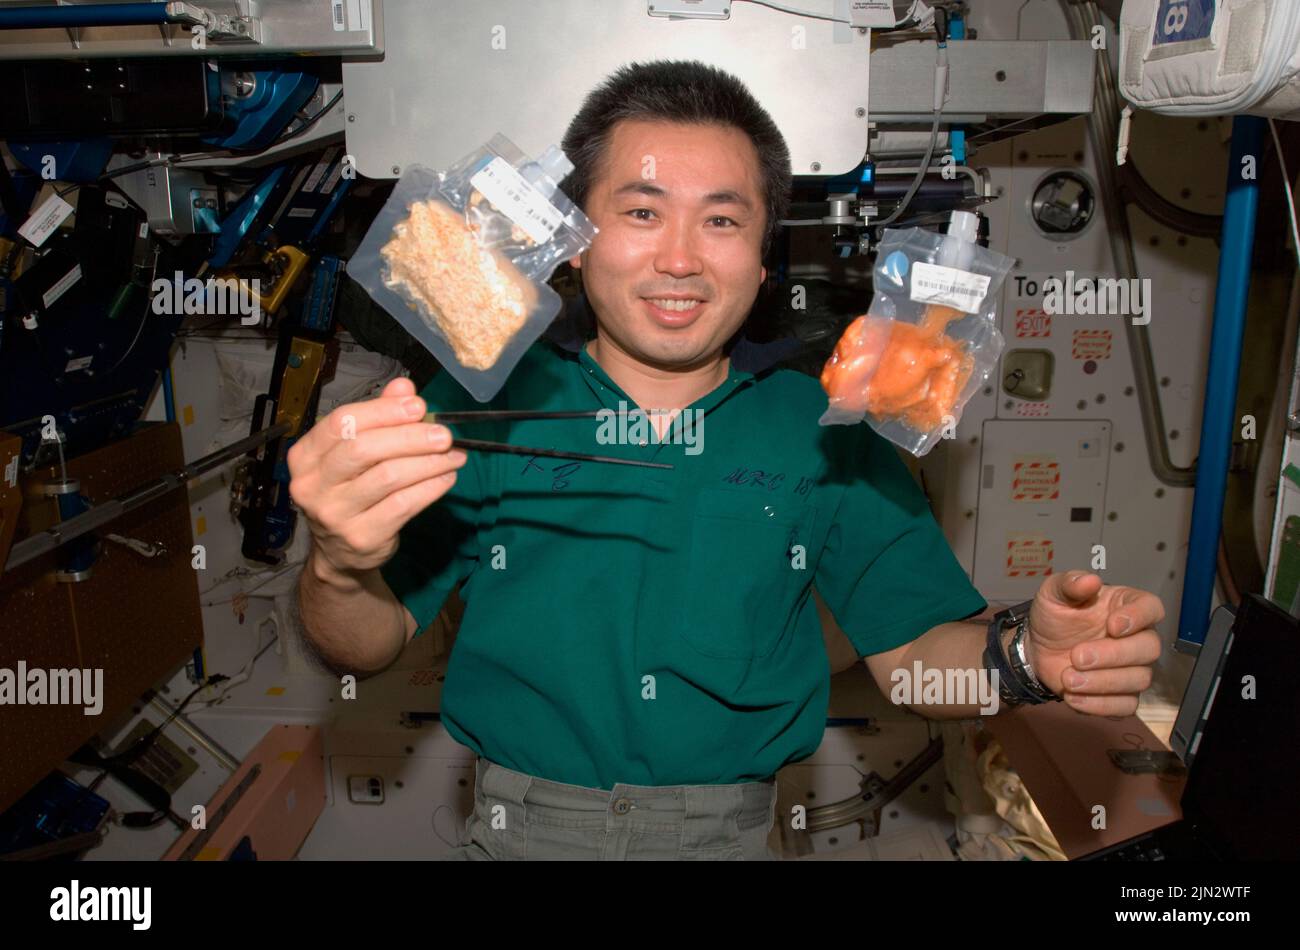 ISS - 03 de junio de 2009 - El astronauta de la Agencia de Exploración Aeroespacial de Japón (JAXA) Koichi Wakata, ingeniero de vuelo de la Expedición 20, mantiene los palillos cerca de dos alimentos Foto de stock